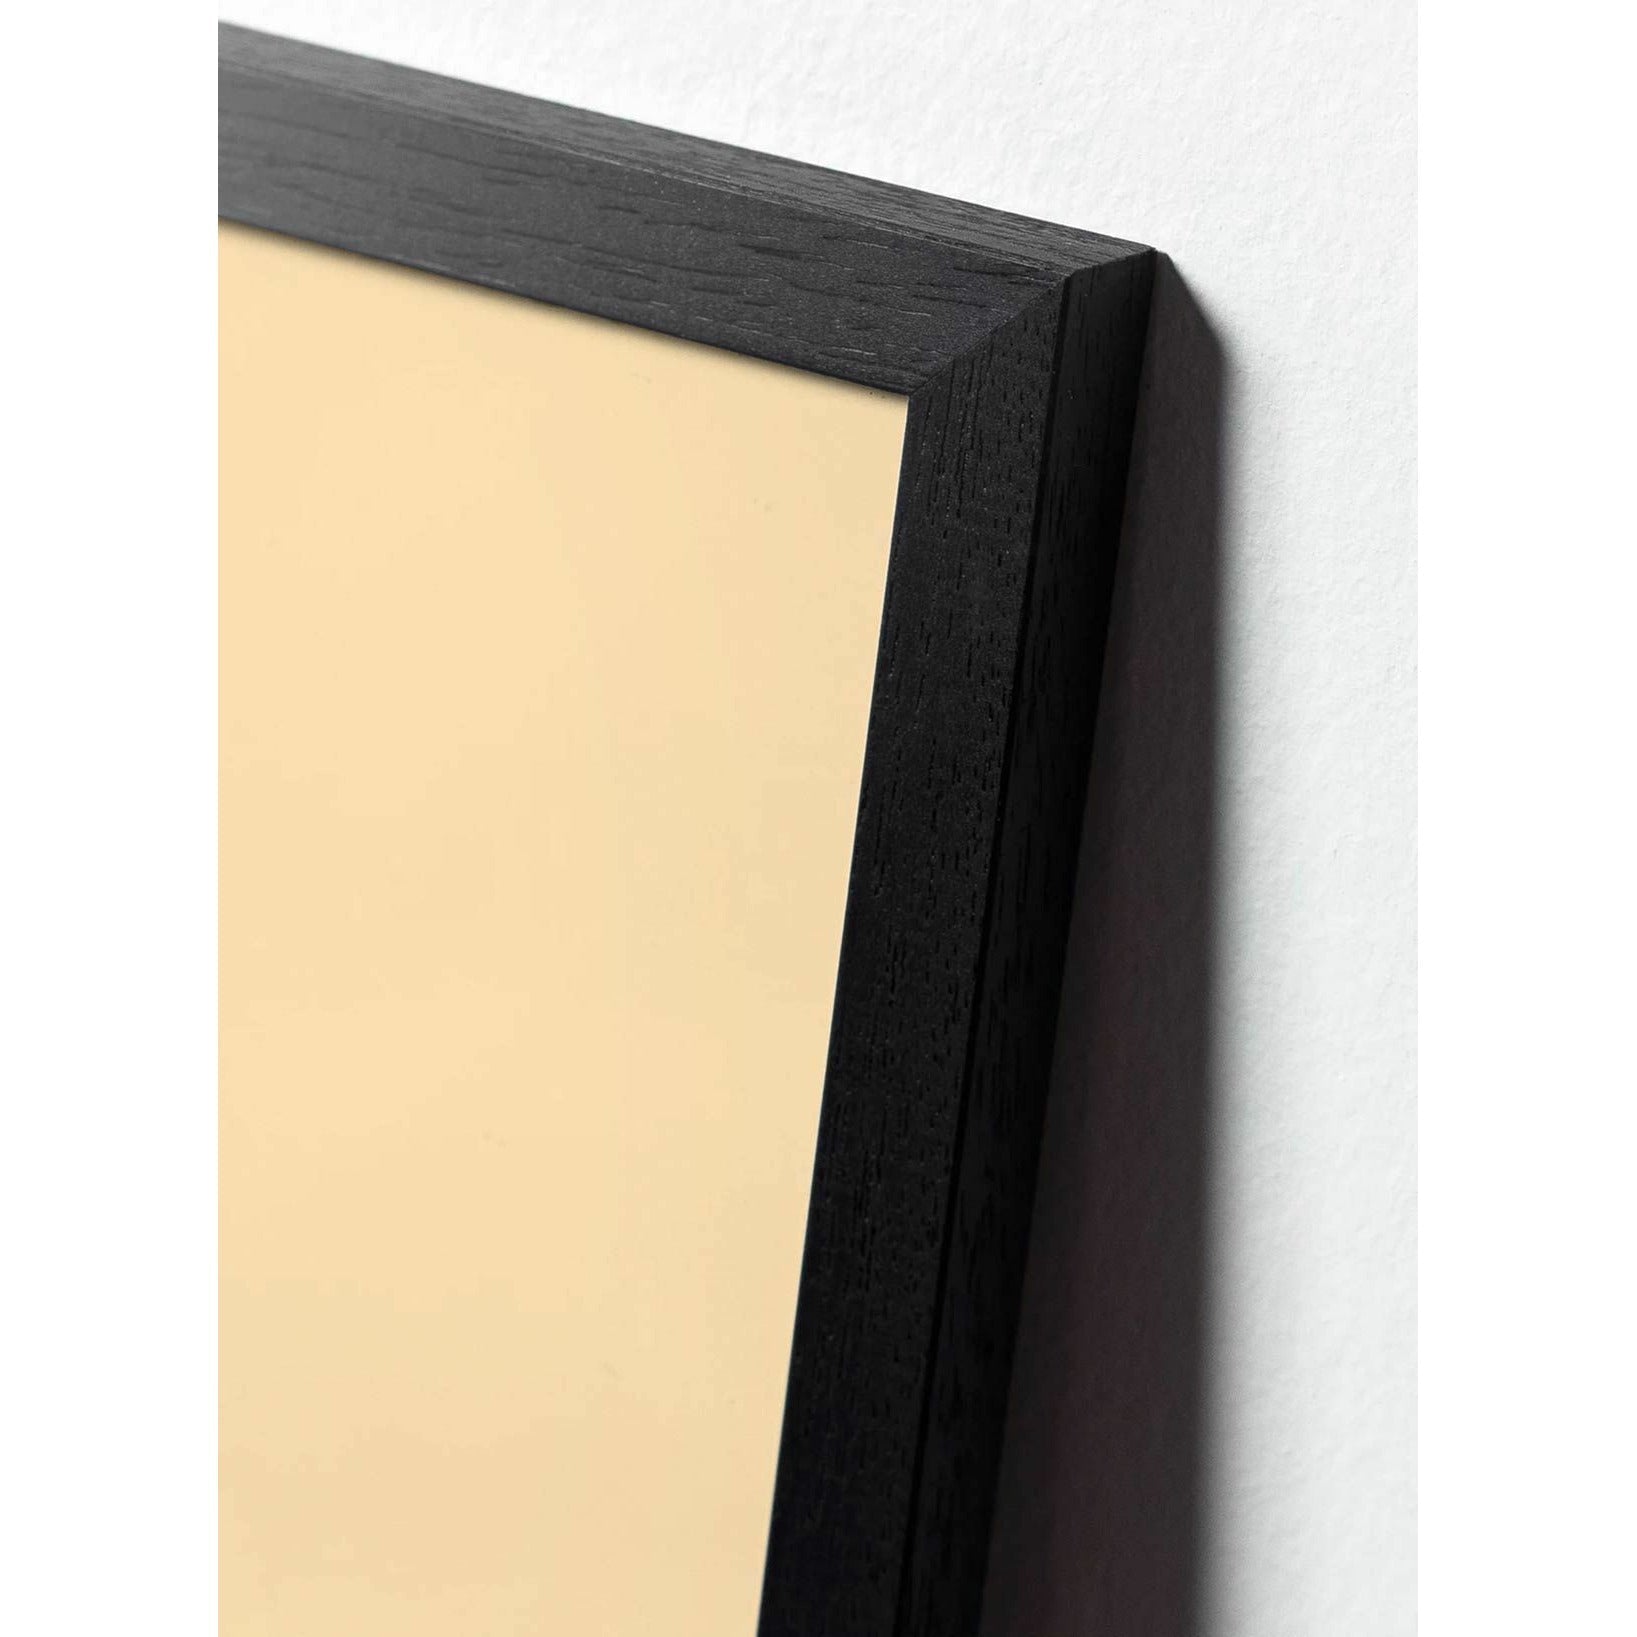 Póster de icono de diseño de hormigas de creación, marco hecho de madera lacada negra 50x70 cm, amarillo